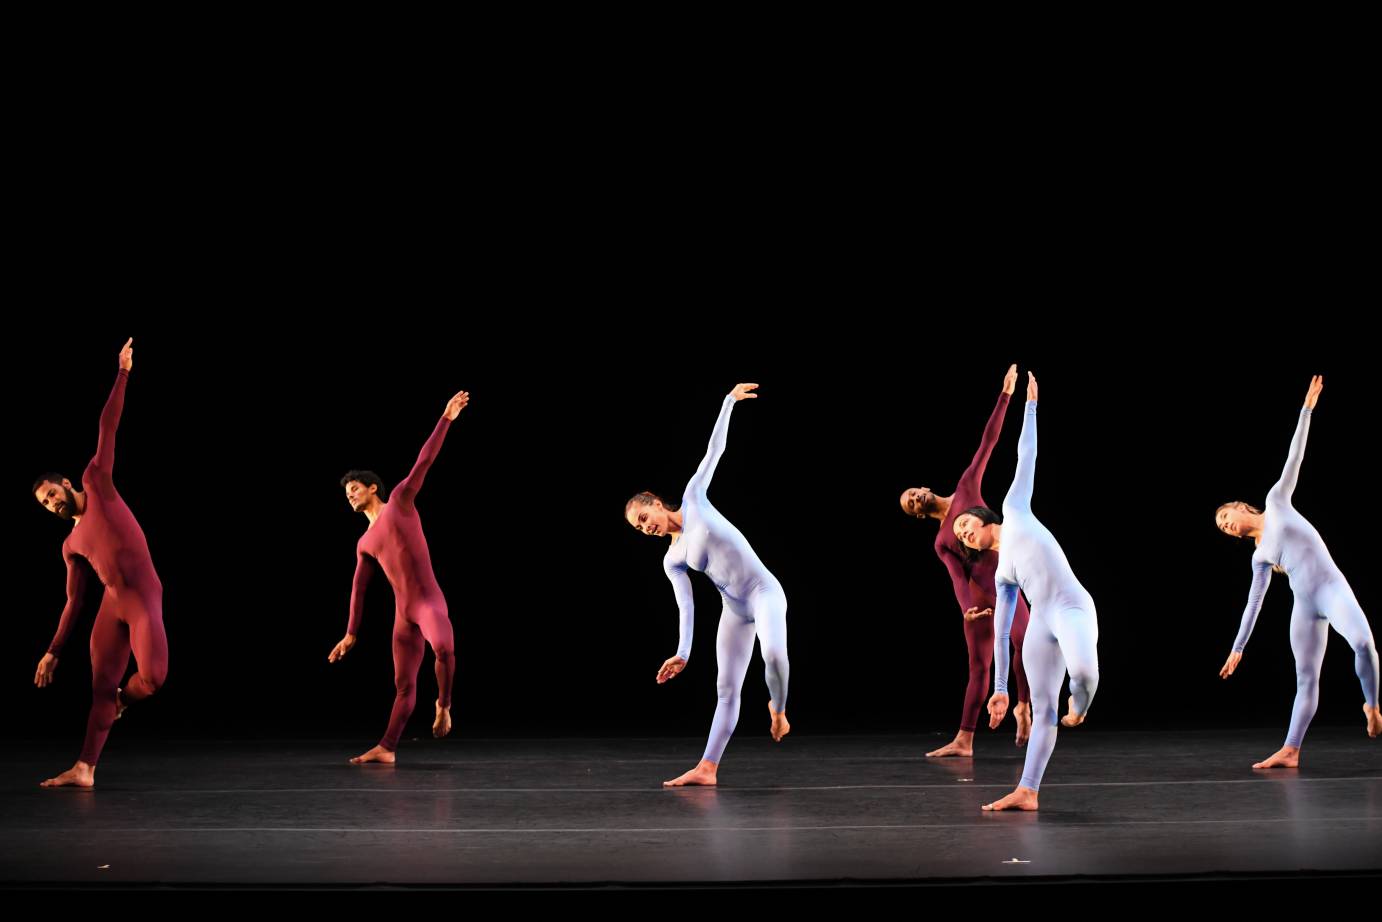 Dancers in purplish unitards tip their bodies sideways